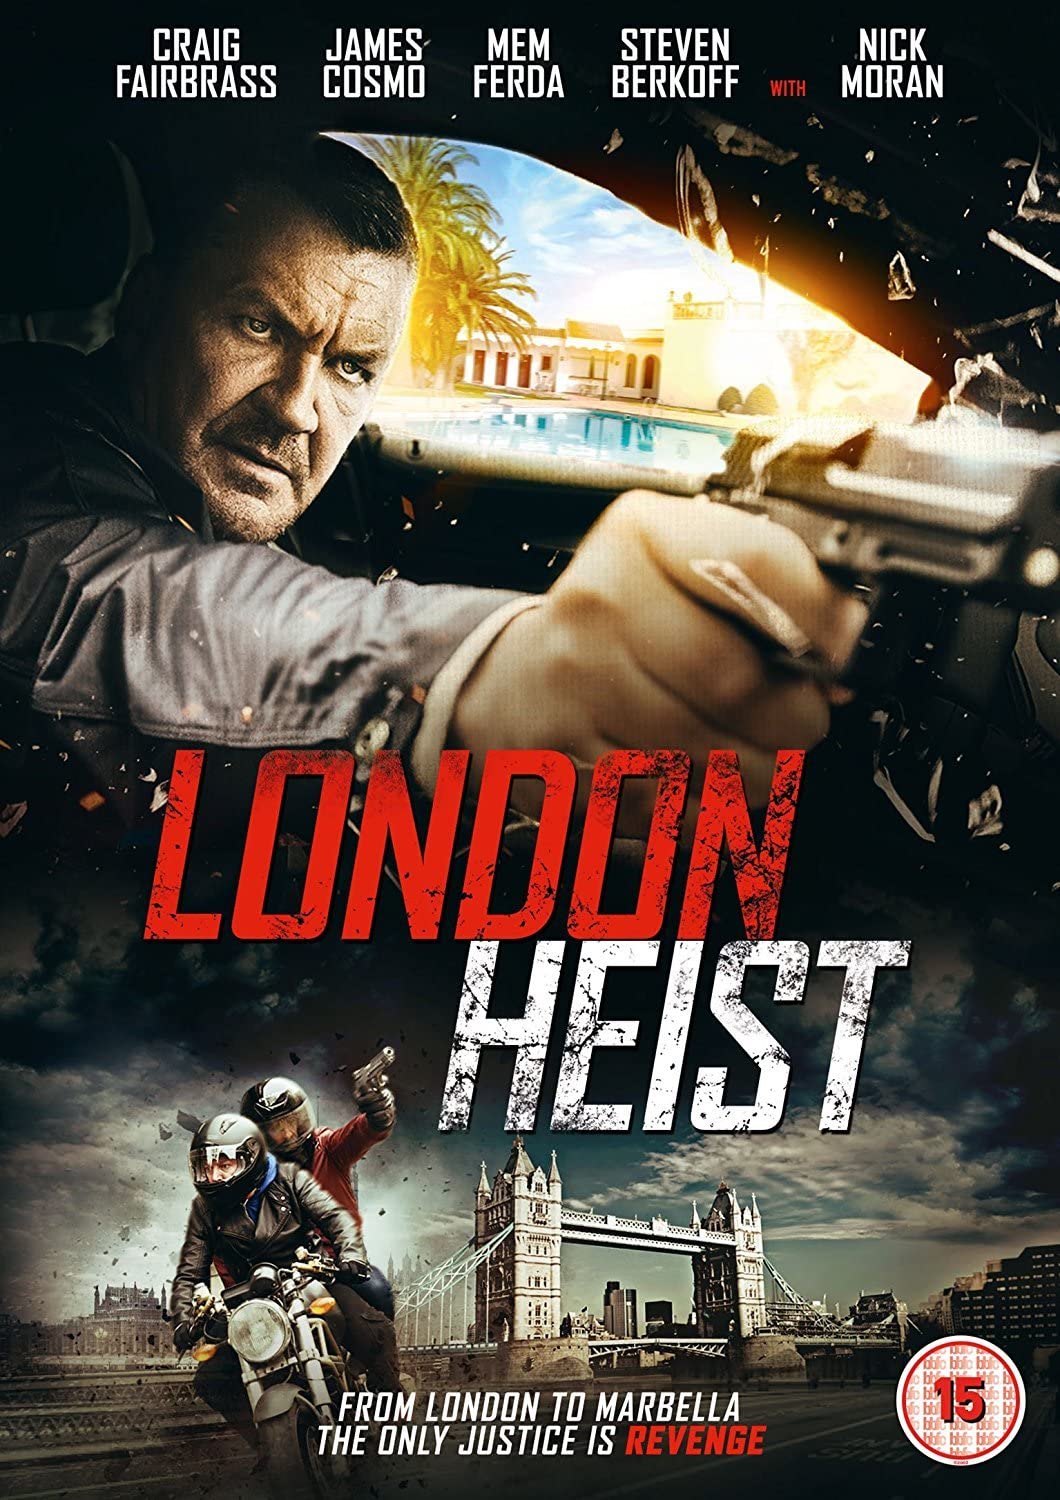 London Heist - Action/Thriller [DVD]